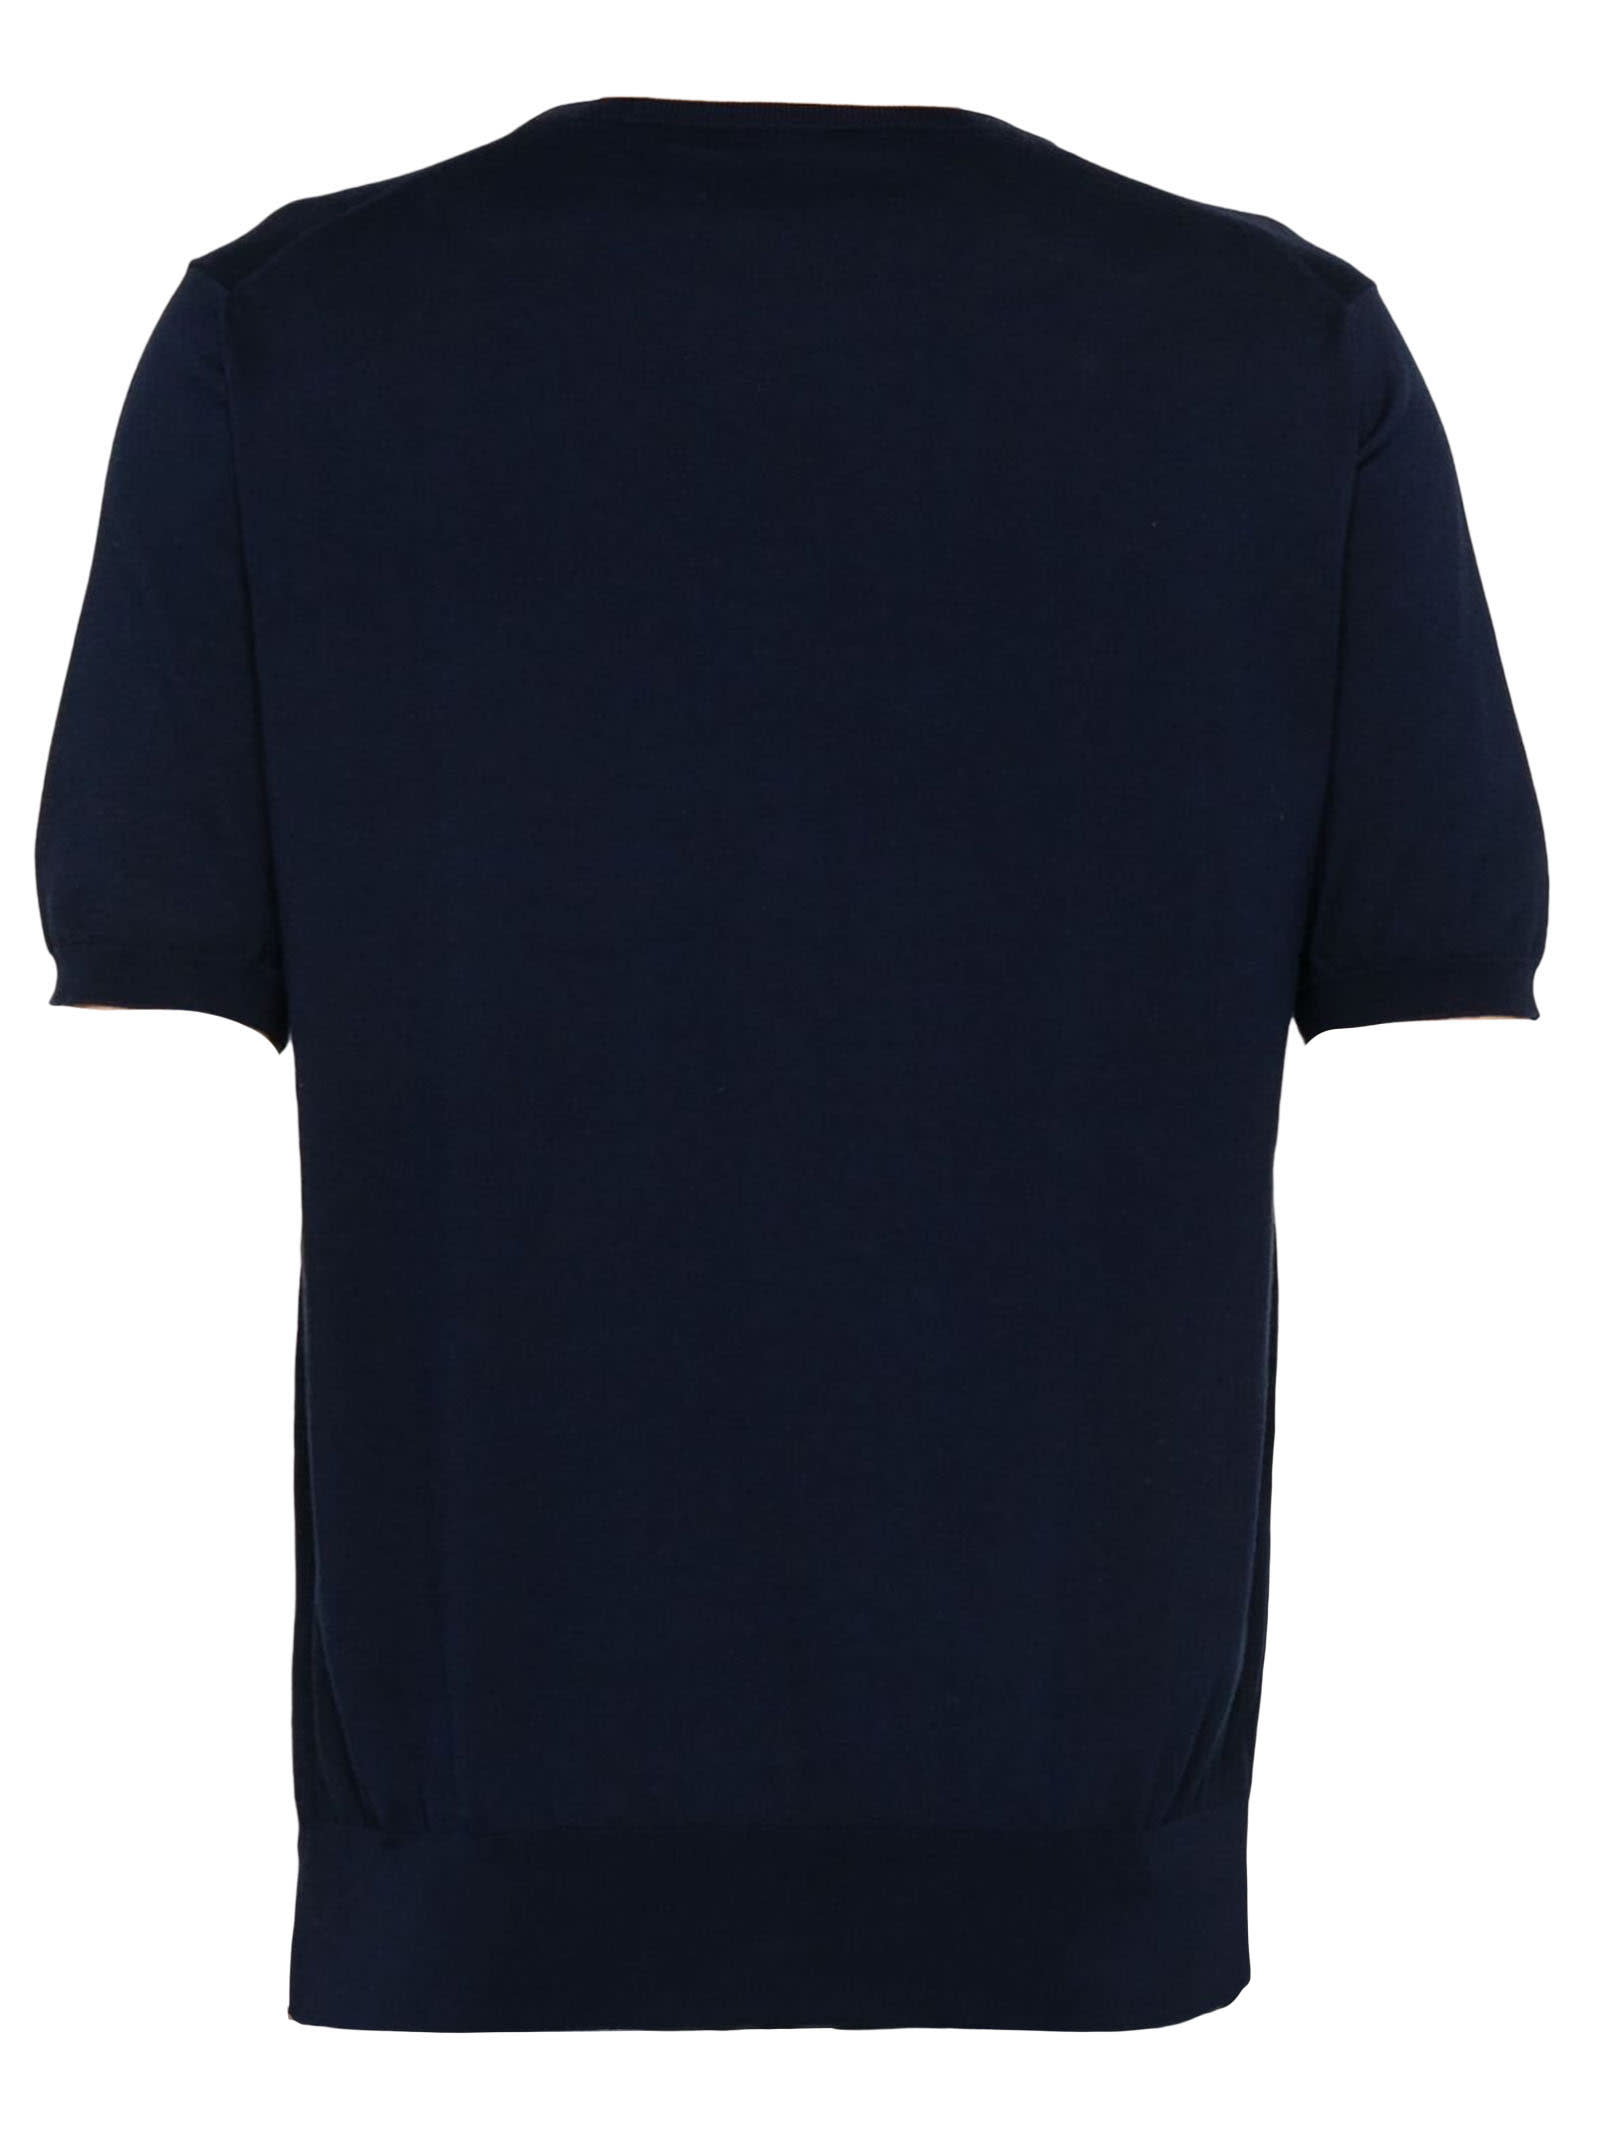 Shop Cruciani Navy Blue Cotton T-shirt